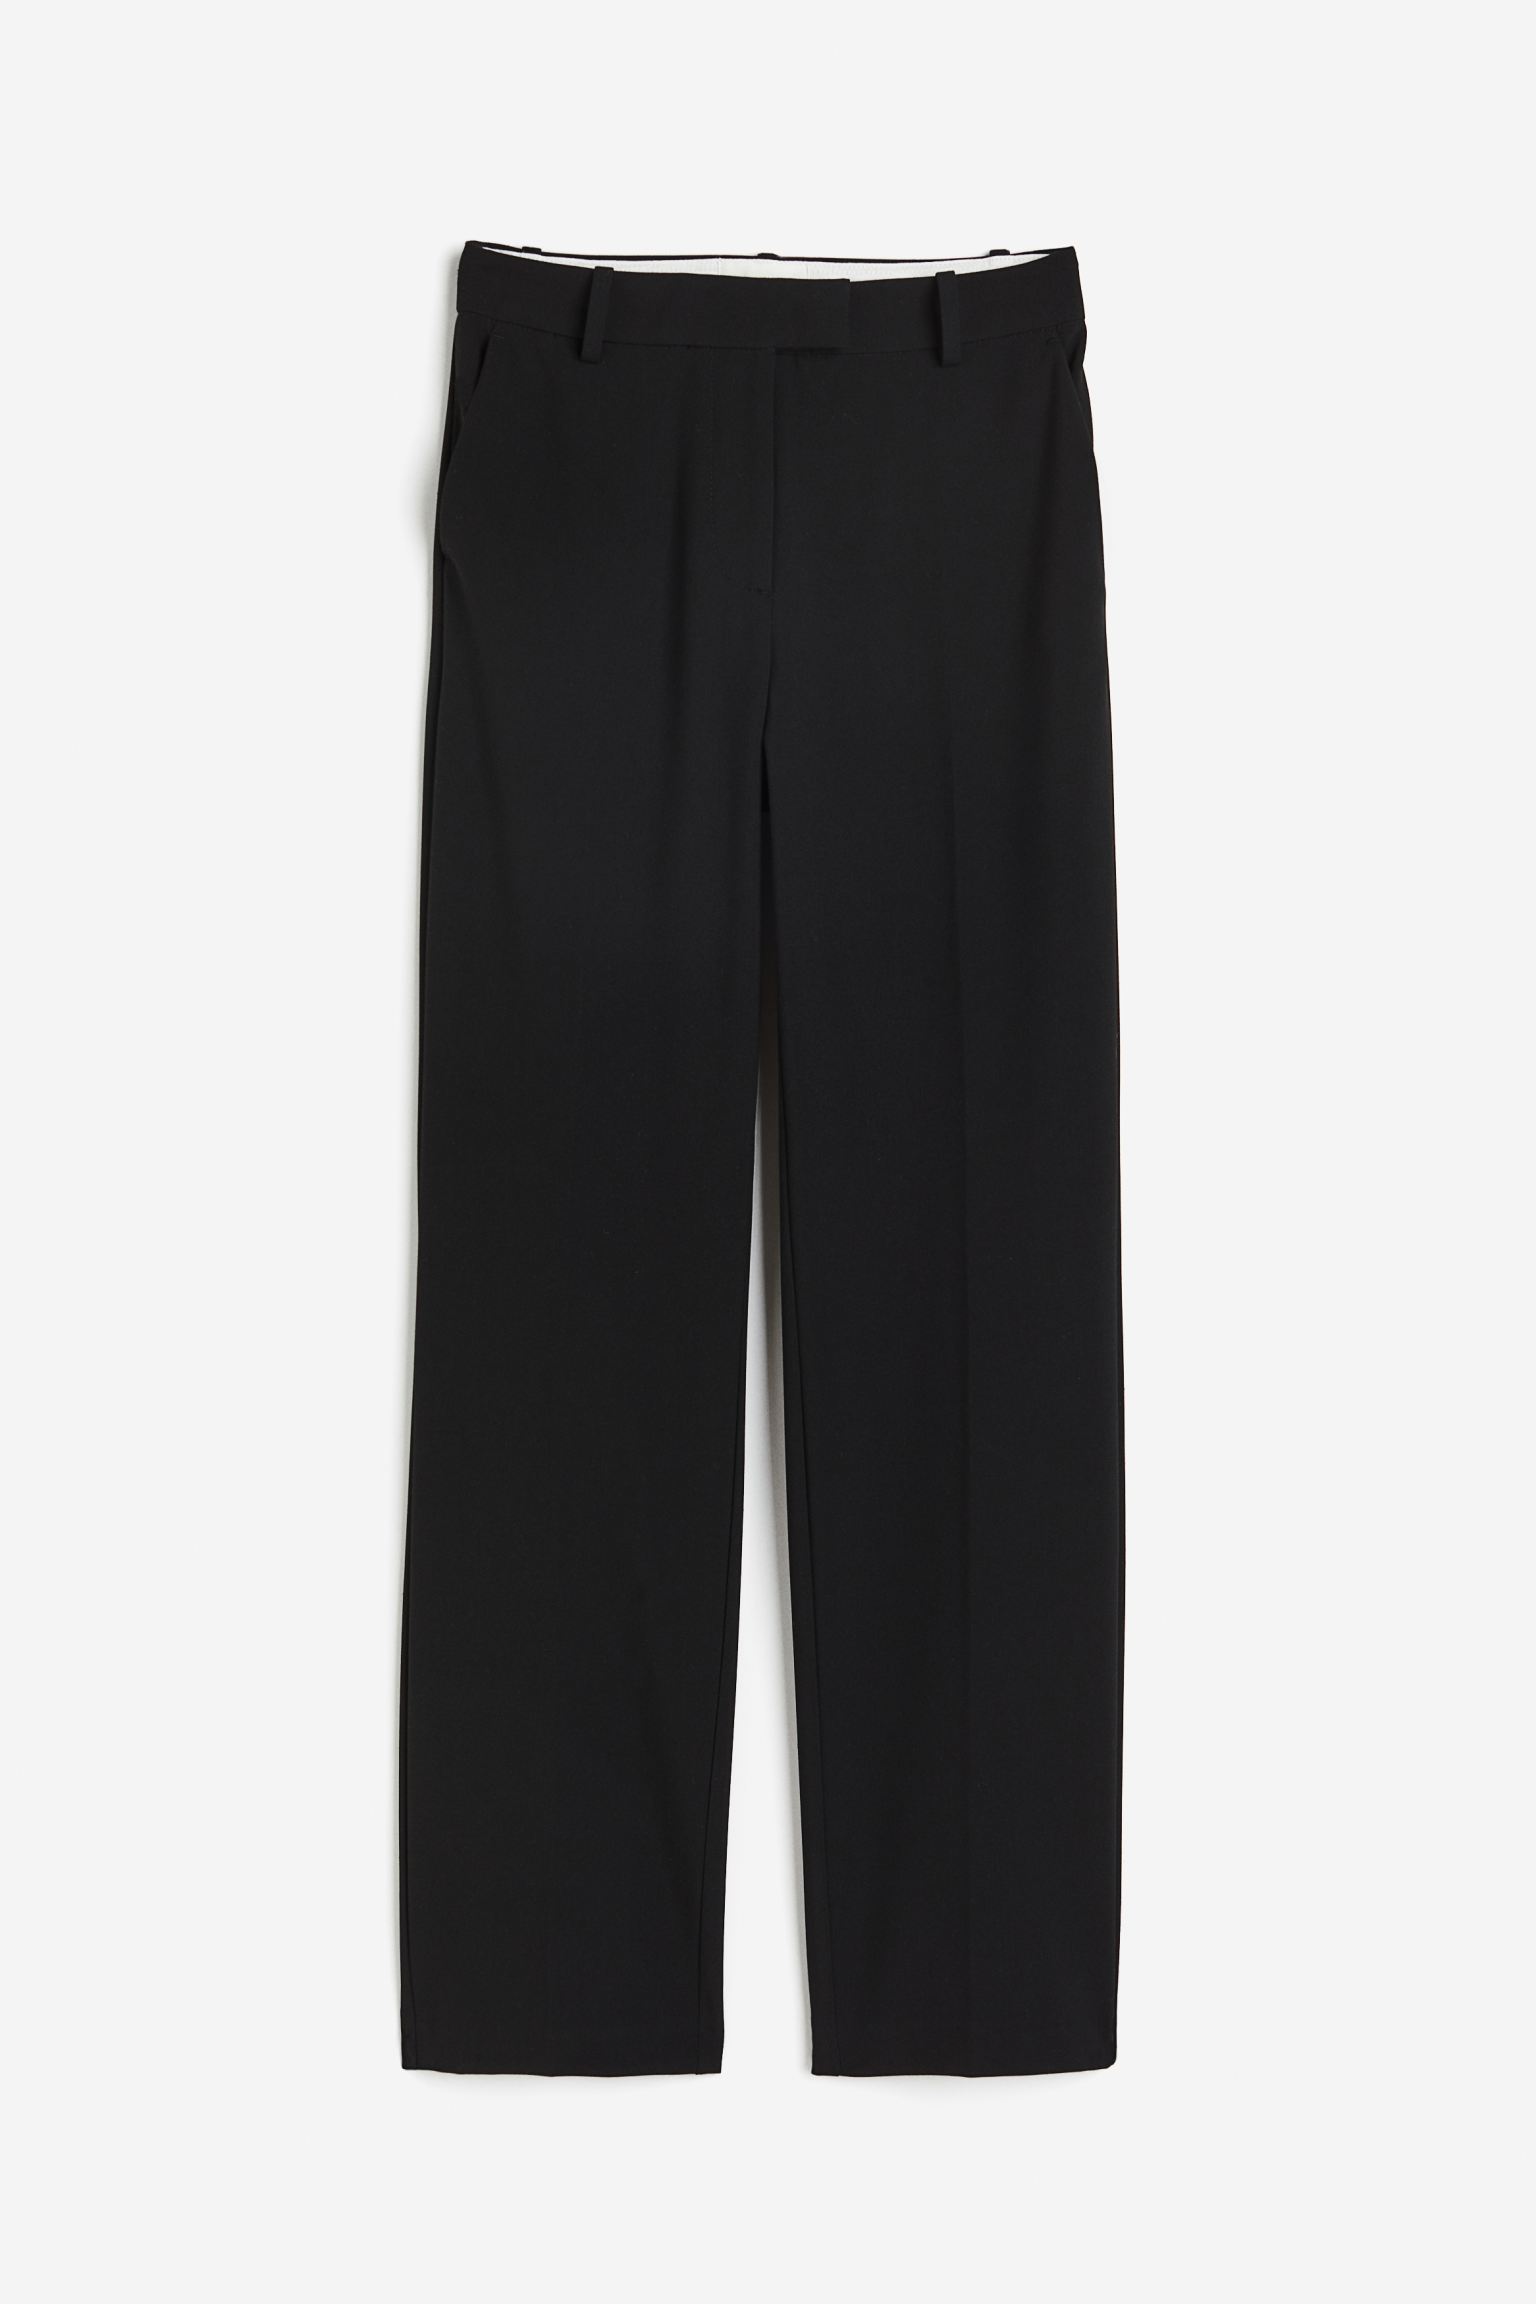 Брюки H&M Slim Fit Twill, черный узкие брюки со складками спереди fransa curve stretch коричневый